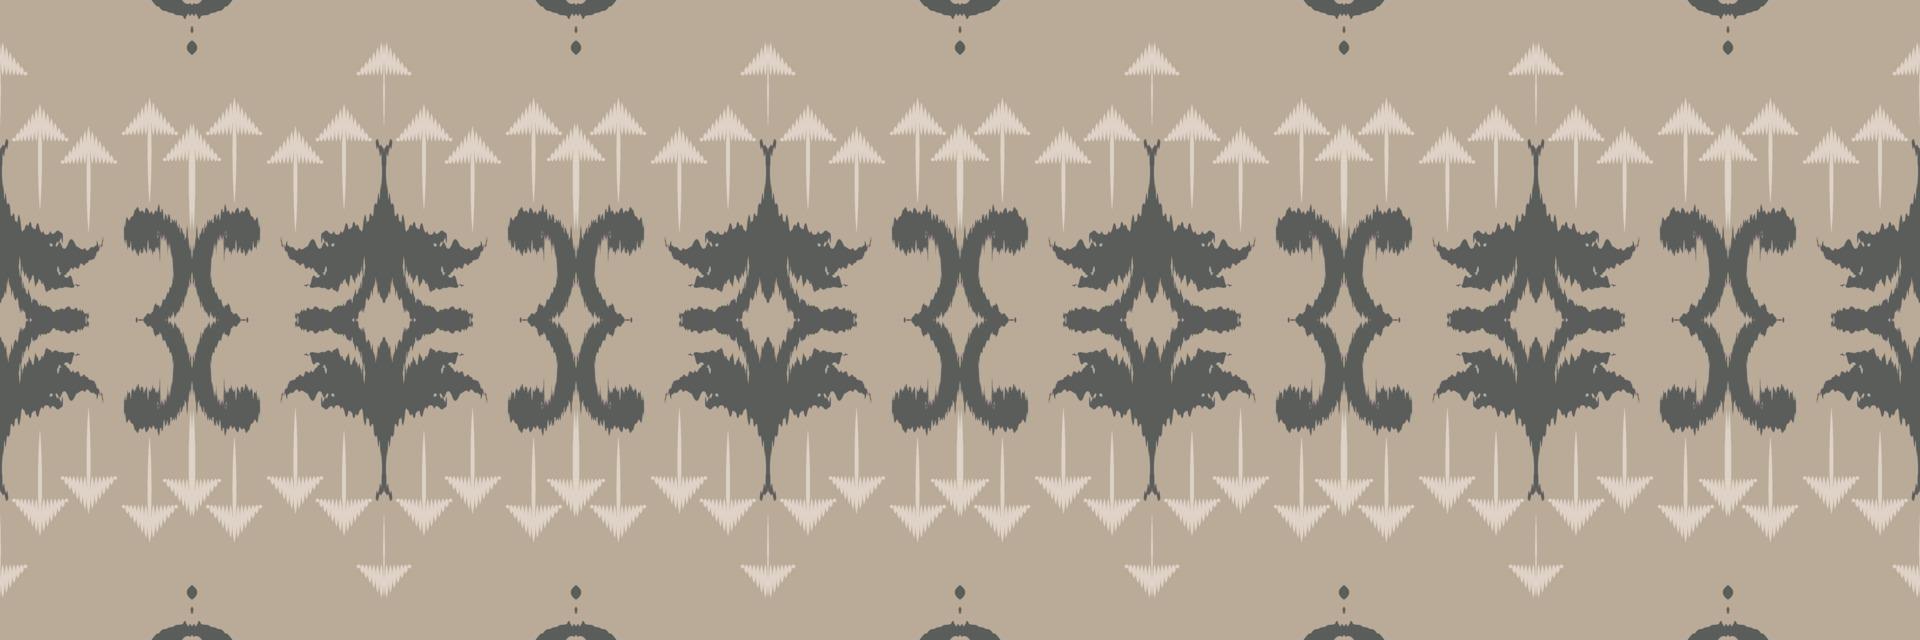 batik têxtil étnico ikat flor sem costura padrão design de vetor digital para impressão saree kurti borneo tecido borda escova símbolos amostras elegantes